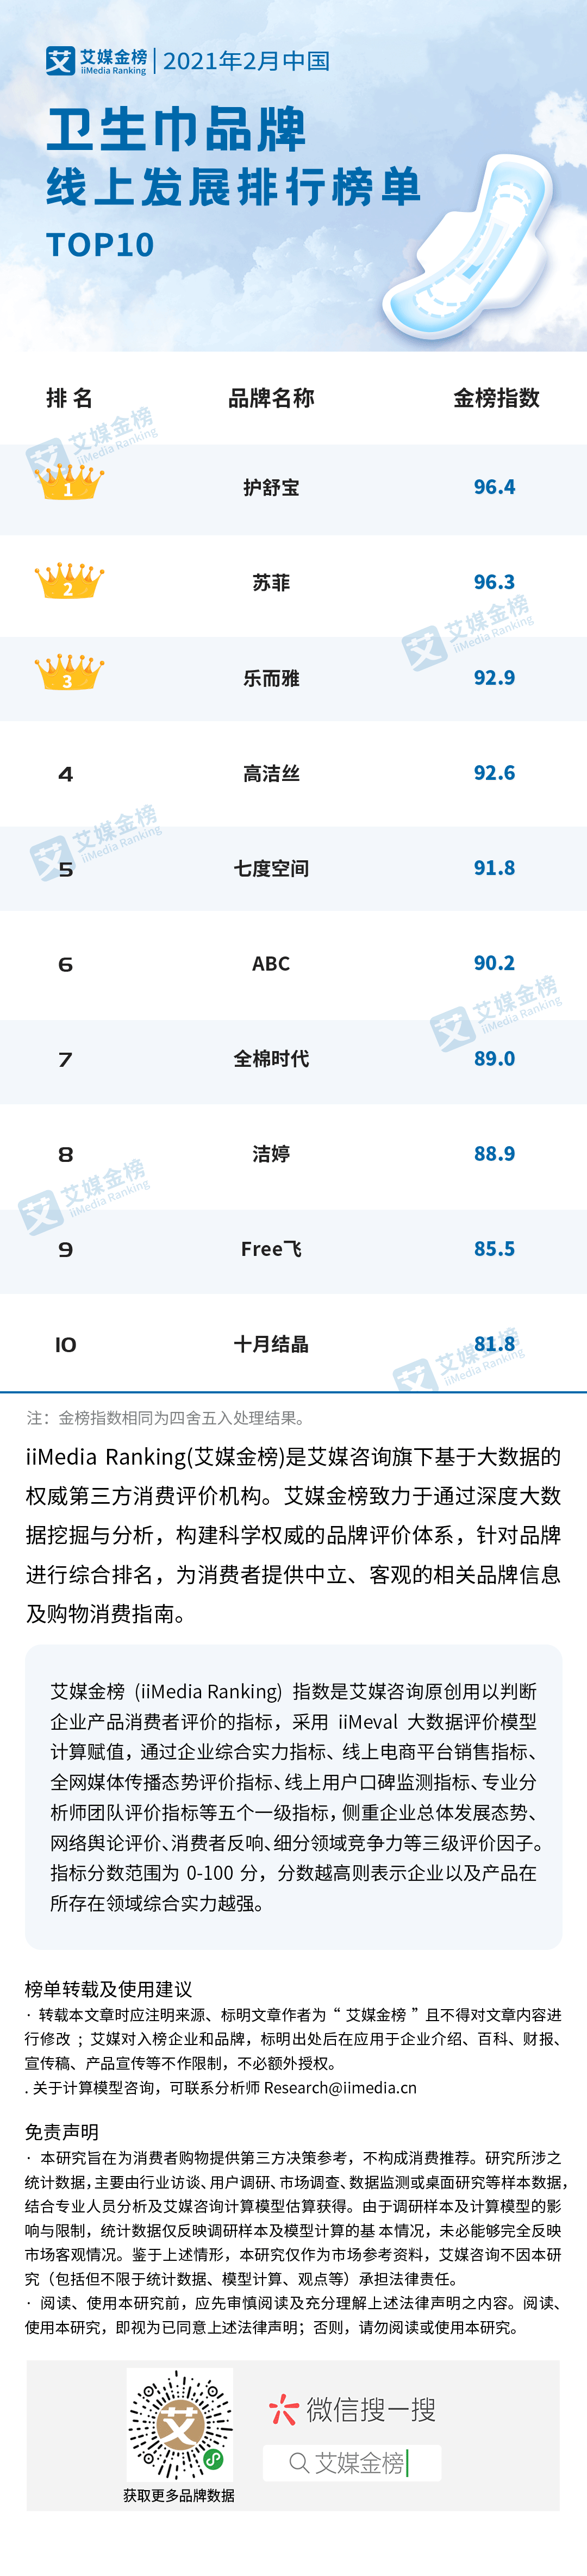 产妇卫生巾排行榜_2020中国卫生巾品牌排行榜(TOP10)